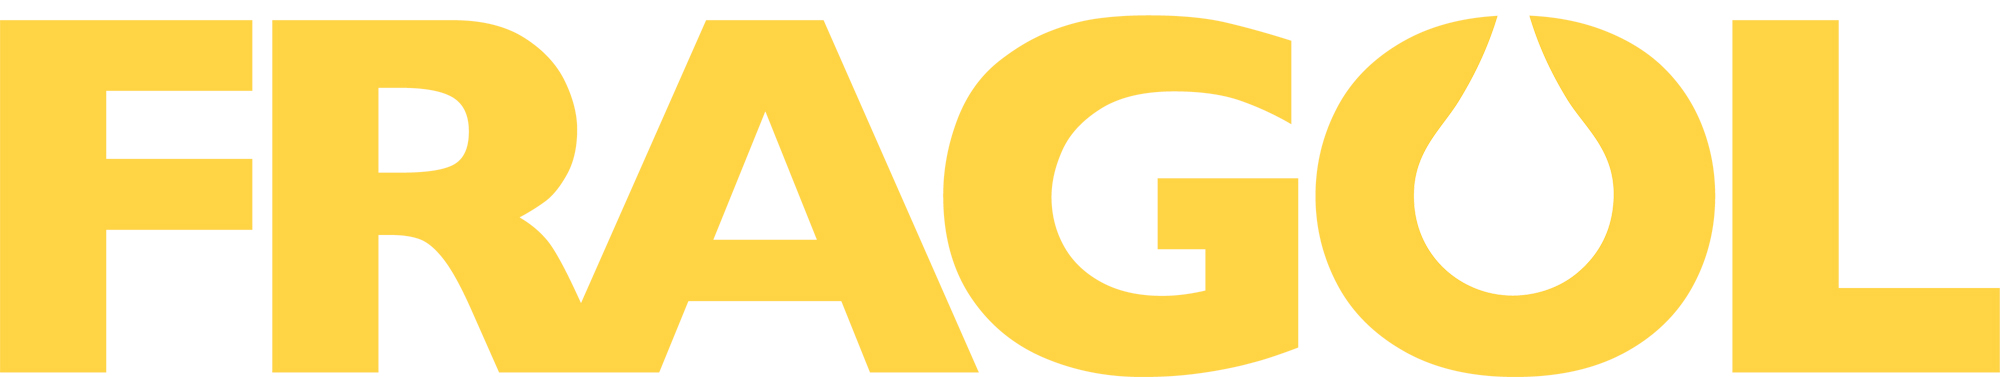 fragol gelb logo